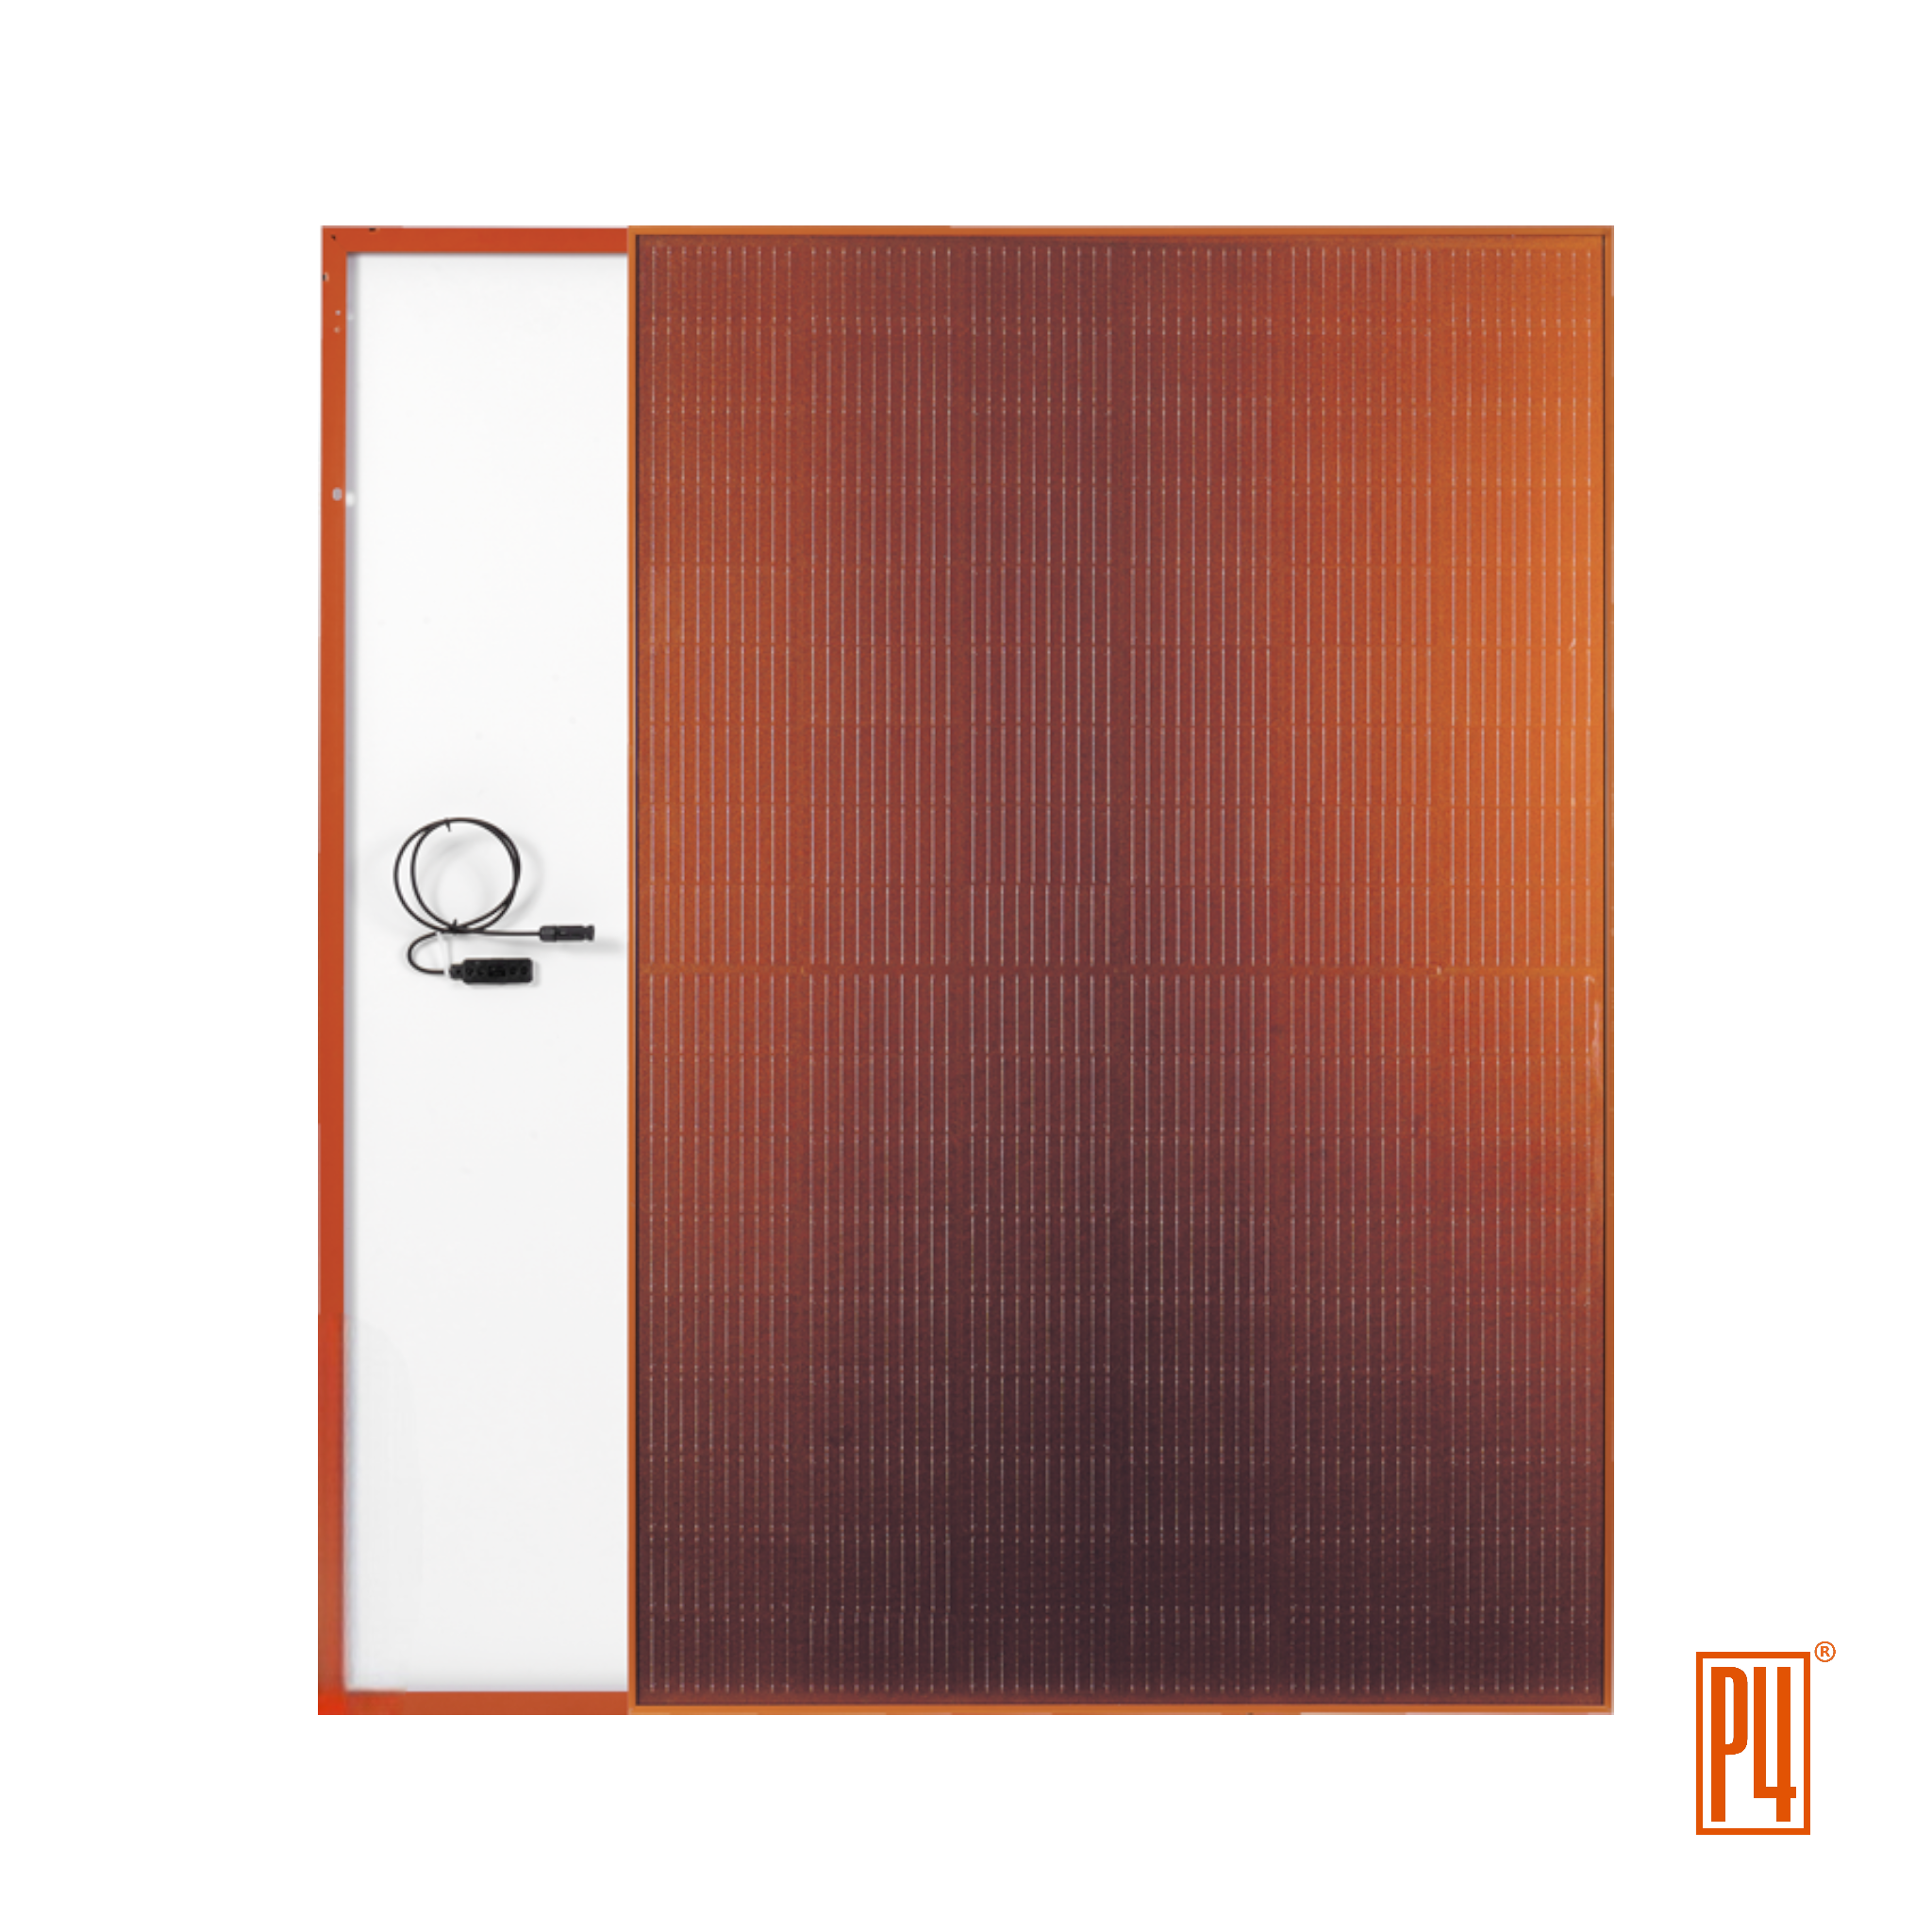 Solarwechselrichter für ihre Photovoltaikanlage günstig kaufen. Photovoltaik Online Shop. Komplettanlagen und Solar Beratung vom Fachmann. Lohnt sich eine PV-Anlage. Balkonkraftwerk und Mini Solaranlagen